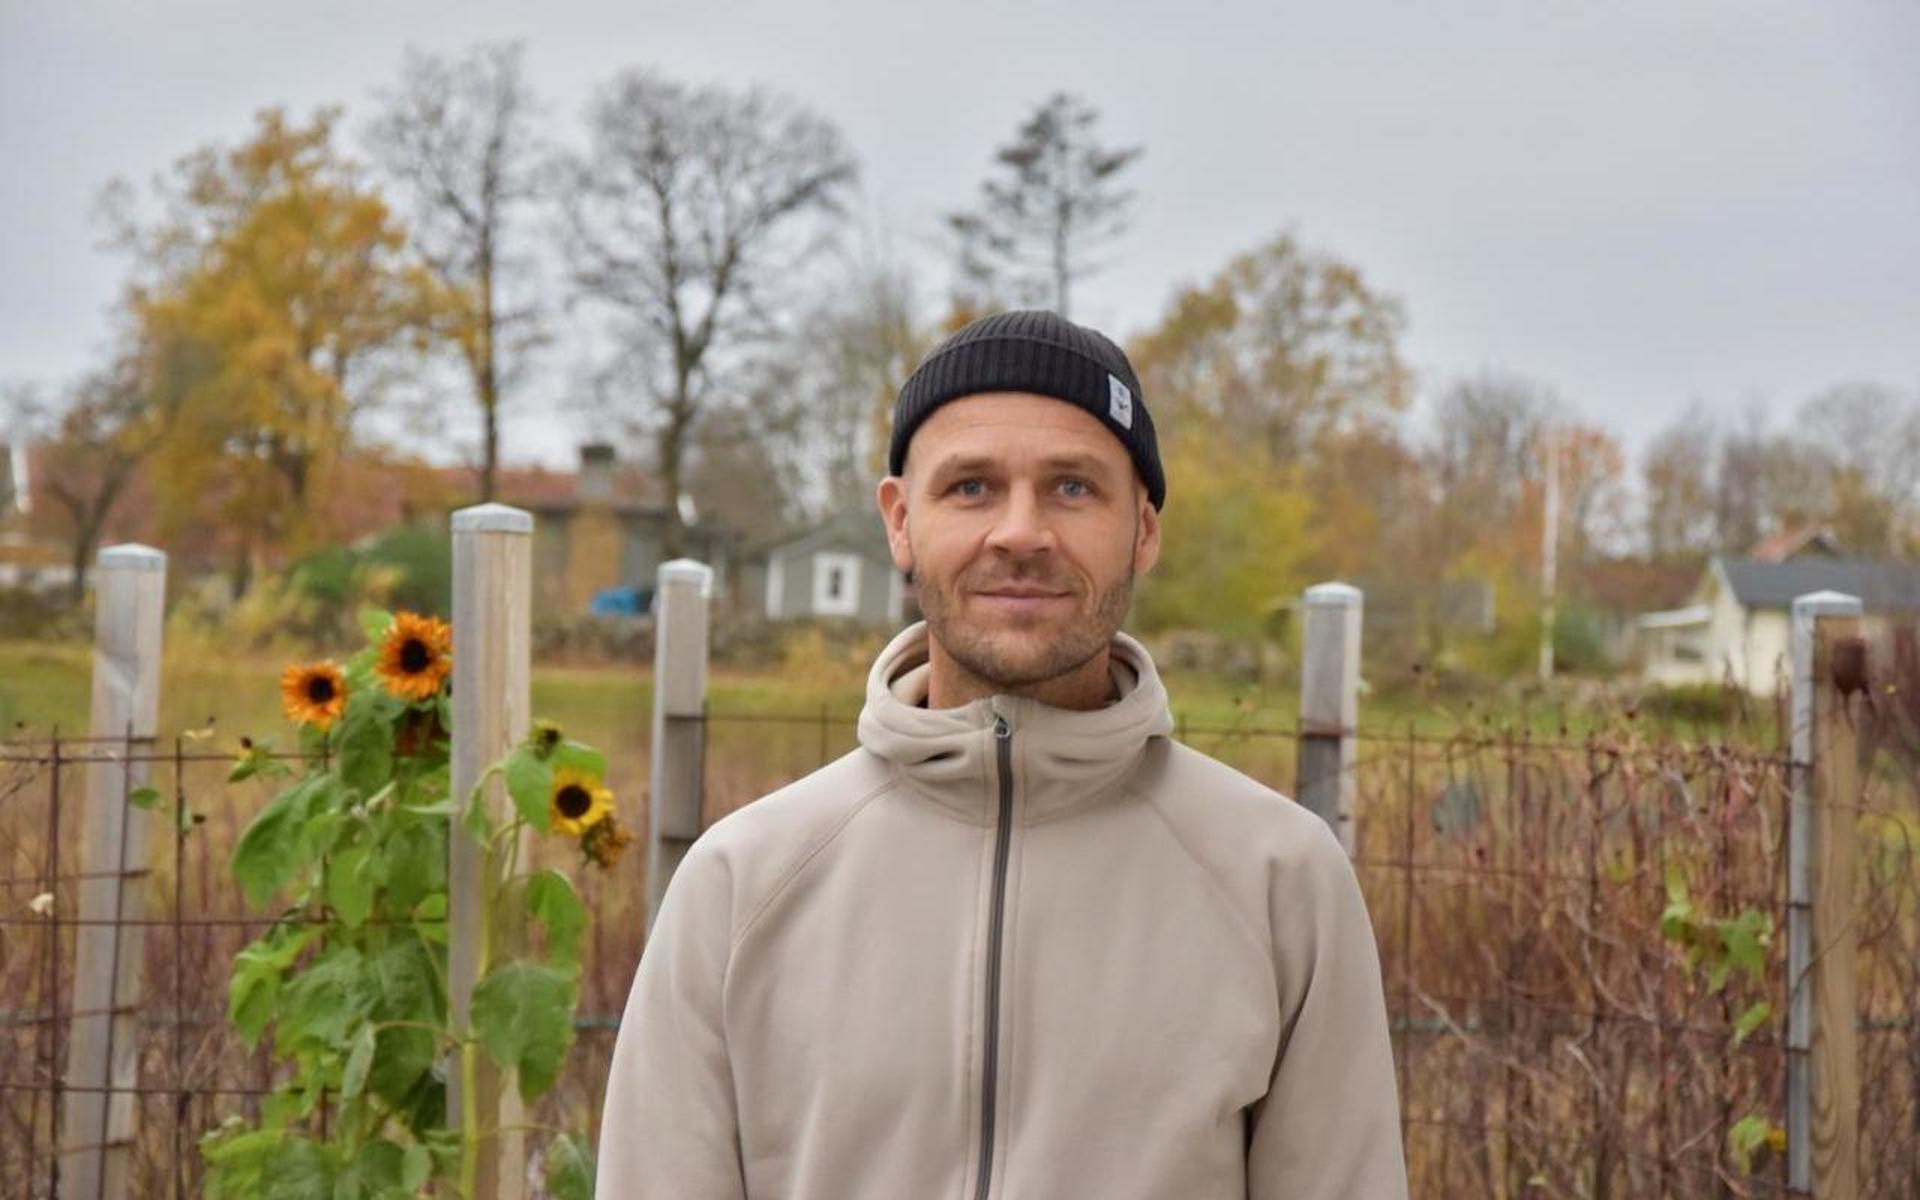 Daniel Bengtsson som är uppvuxen i Borås tillbringade som barn sina somrar i familjens sommarstuga i Apelviken i Varberg.